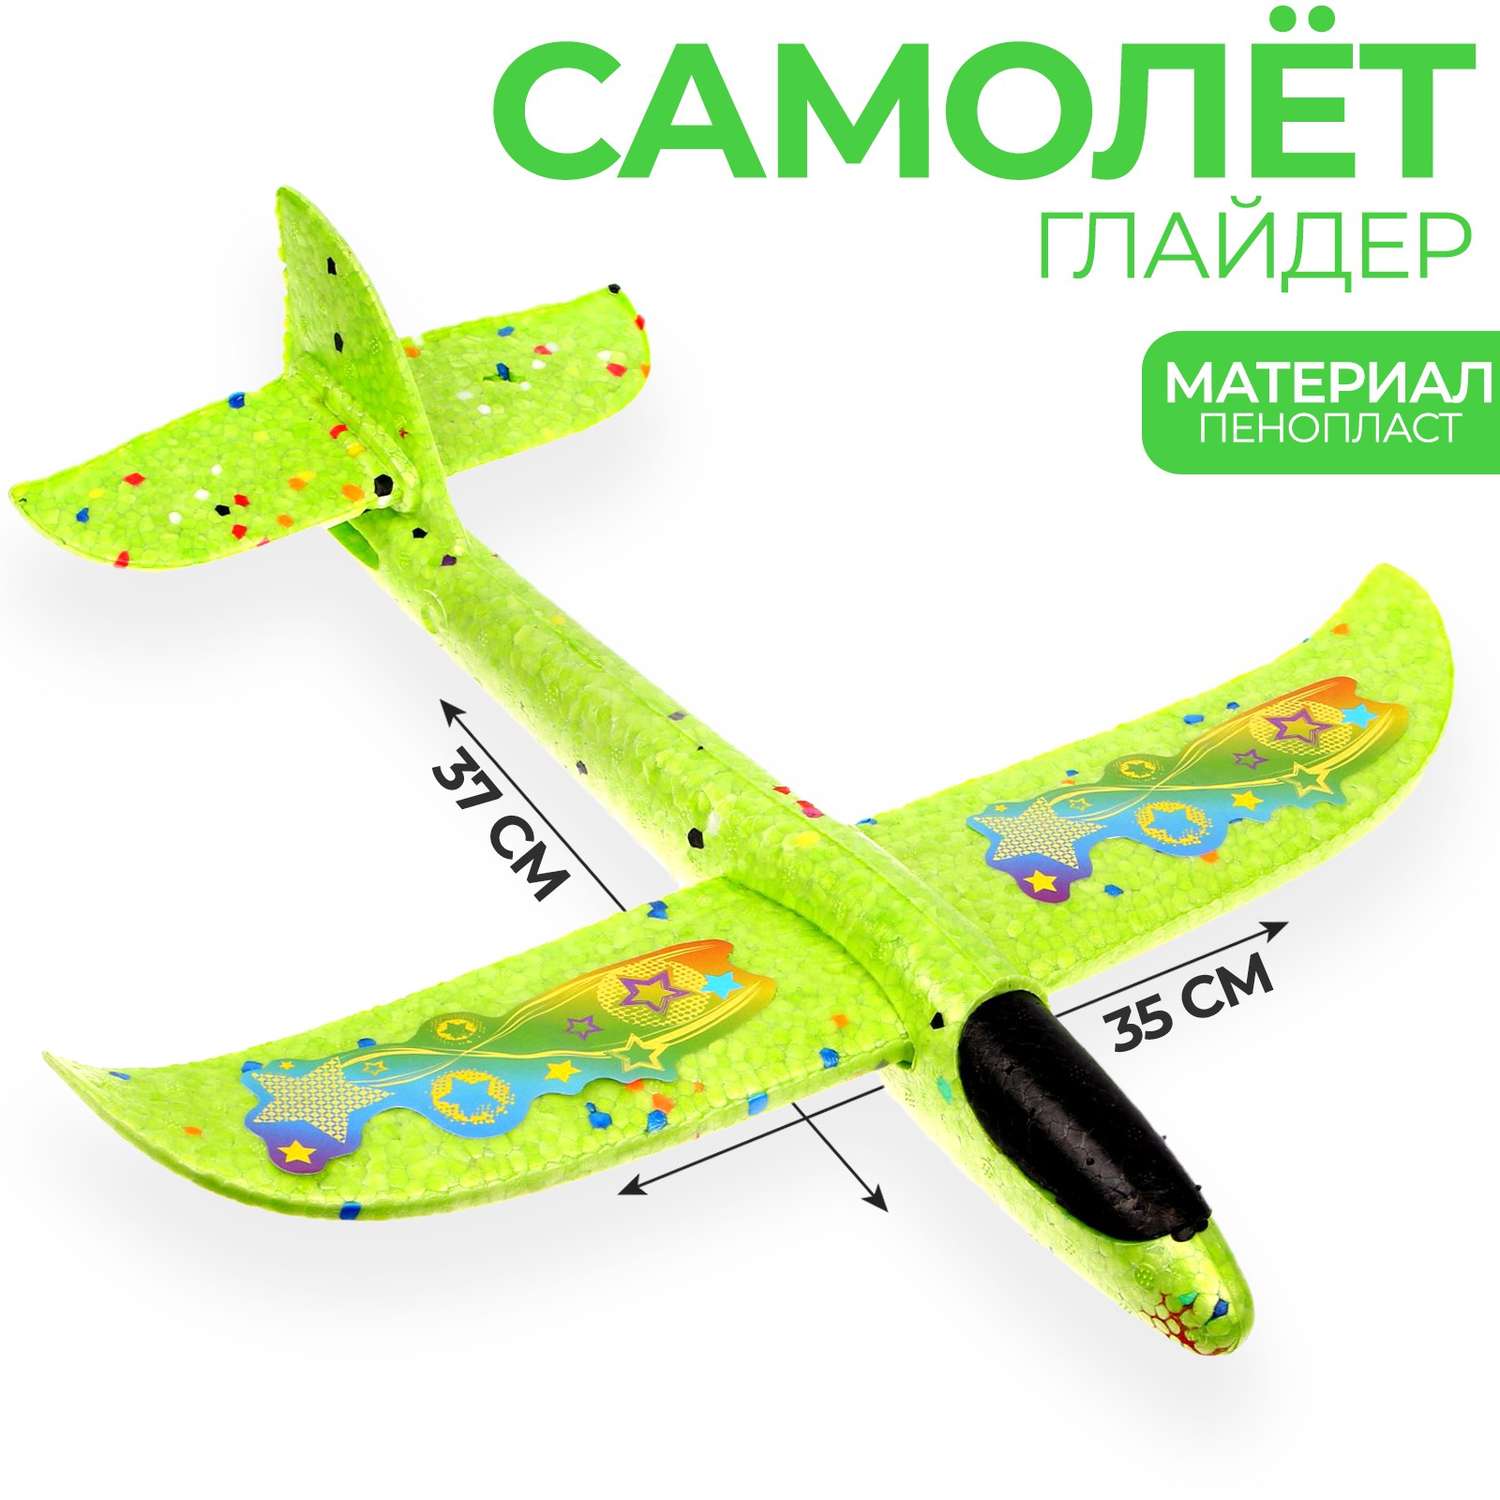 Планер Funny Toys Самолет Супербыстрый зелёный - фото 1